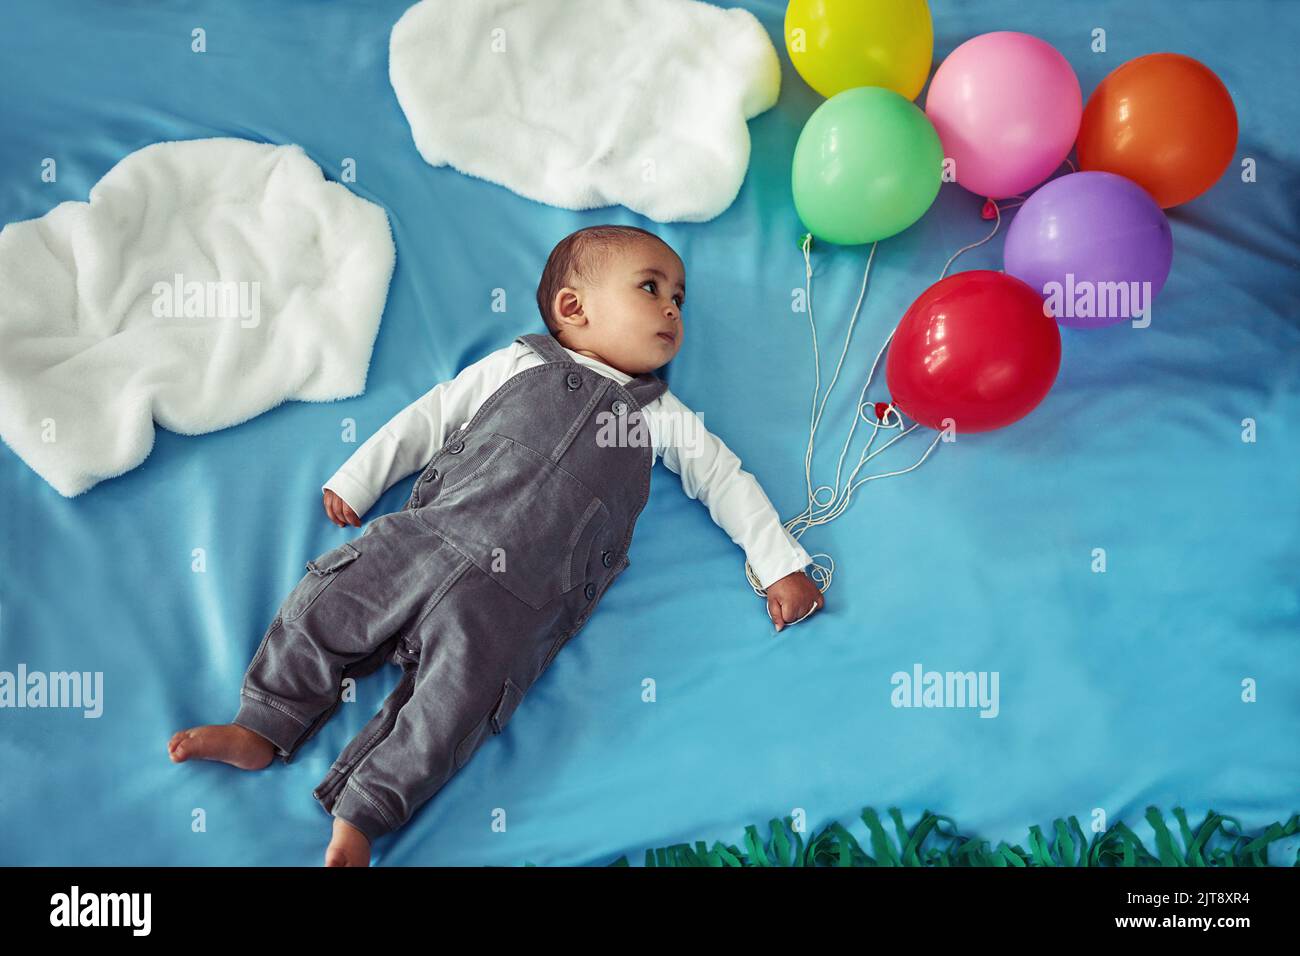 Da qui in poi, il skys il limite. Concept shot di un adorabile bambino che vola attraverso il cielo tenendo un mazzo di palloncini. Foto Stock